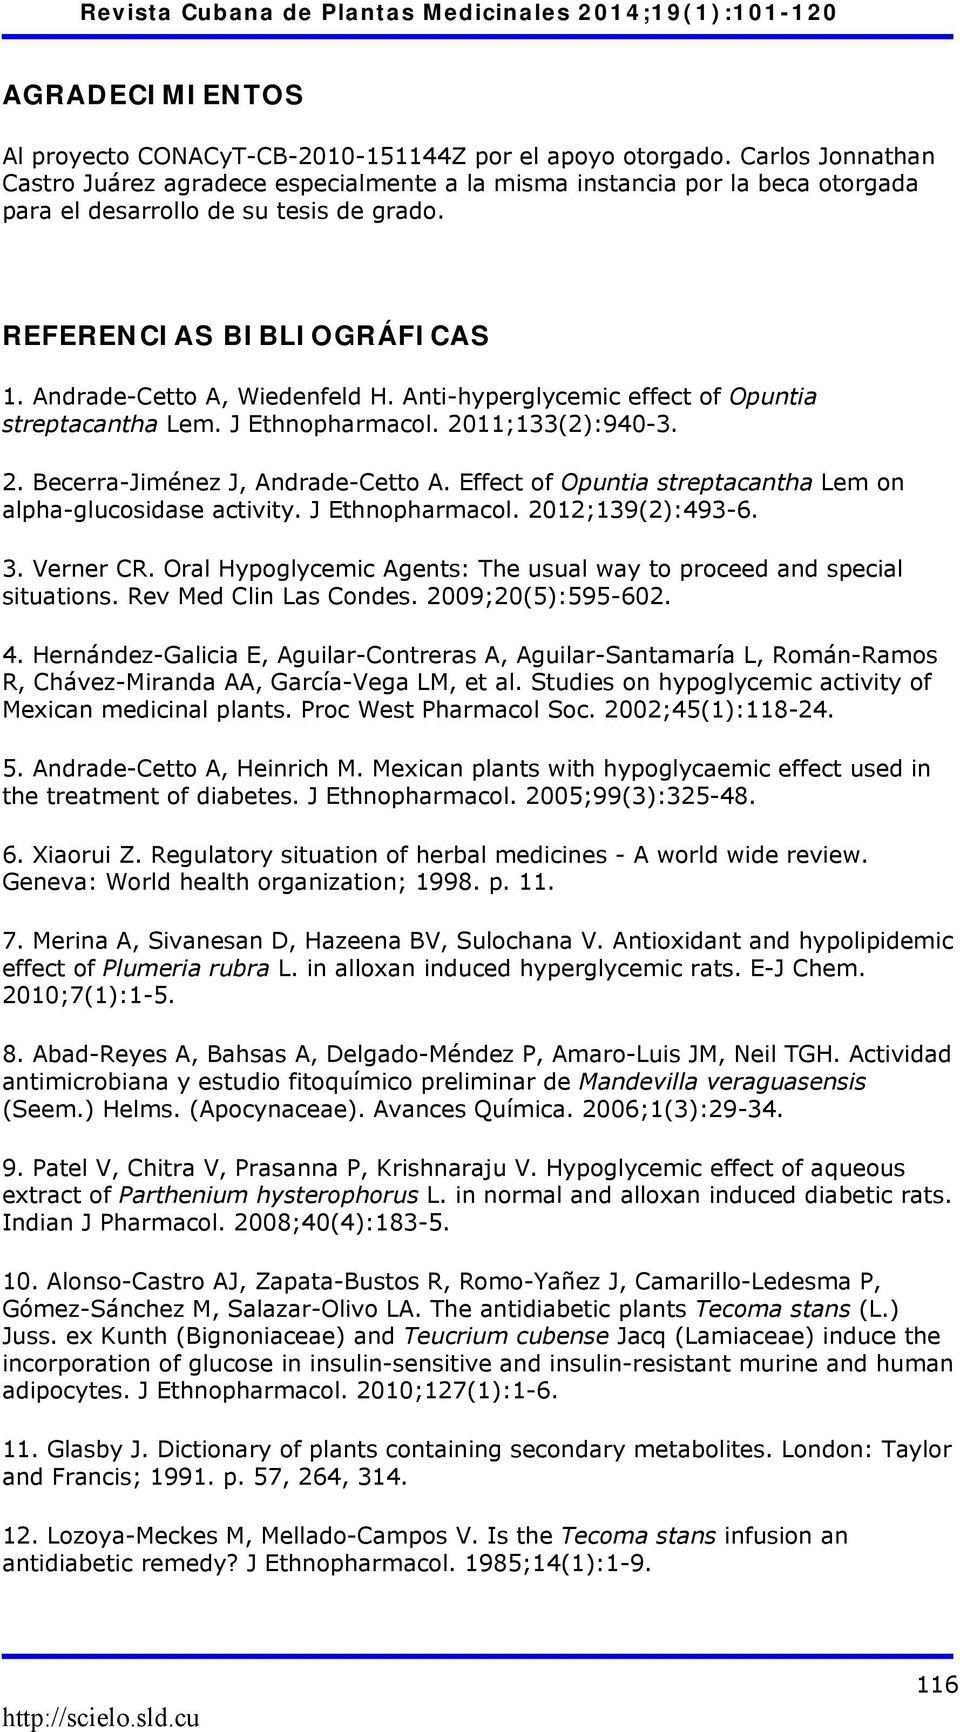 Anti-hyperglycemic effect of Opuntia streptacantha Lem. J Ethnopharmacol. 2011;133(2):940-3. 2. Becerra-Jiménez J, Andrade-Cetto A. Effect of Opuntia streptacantha Lem on alpha-glucosidase activity.